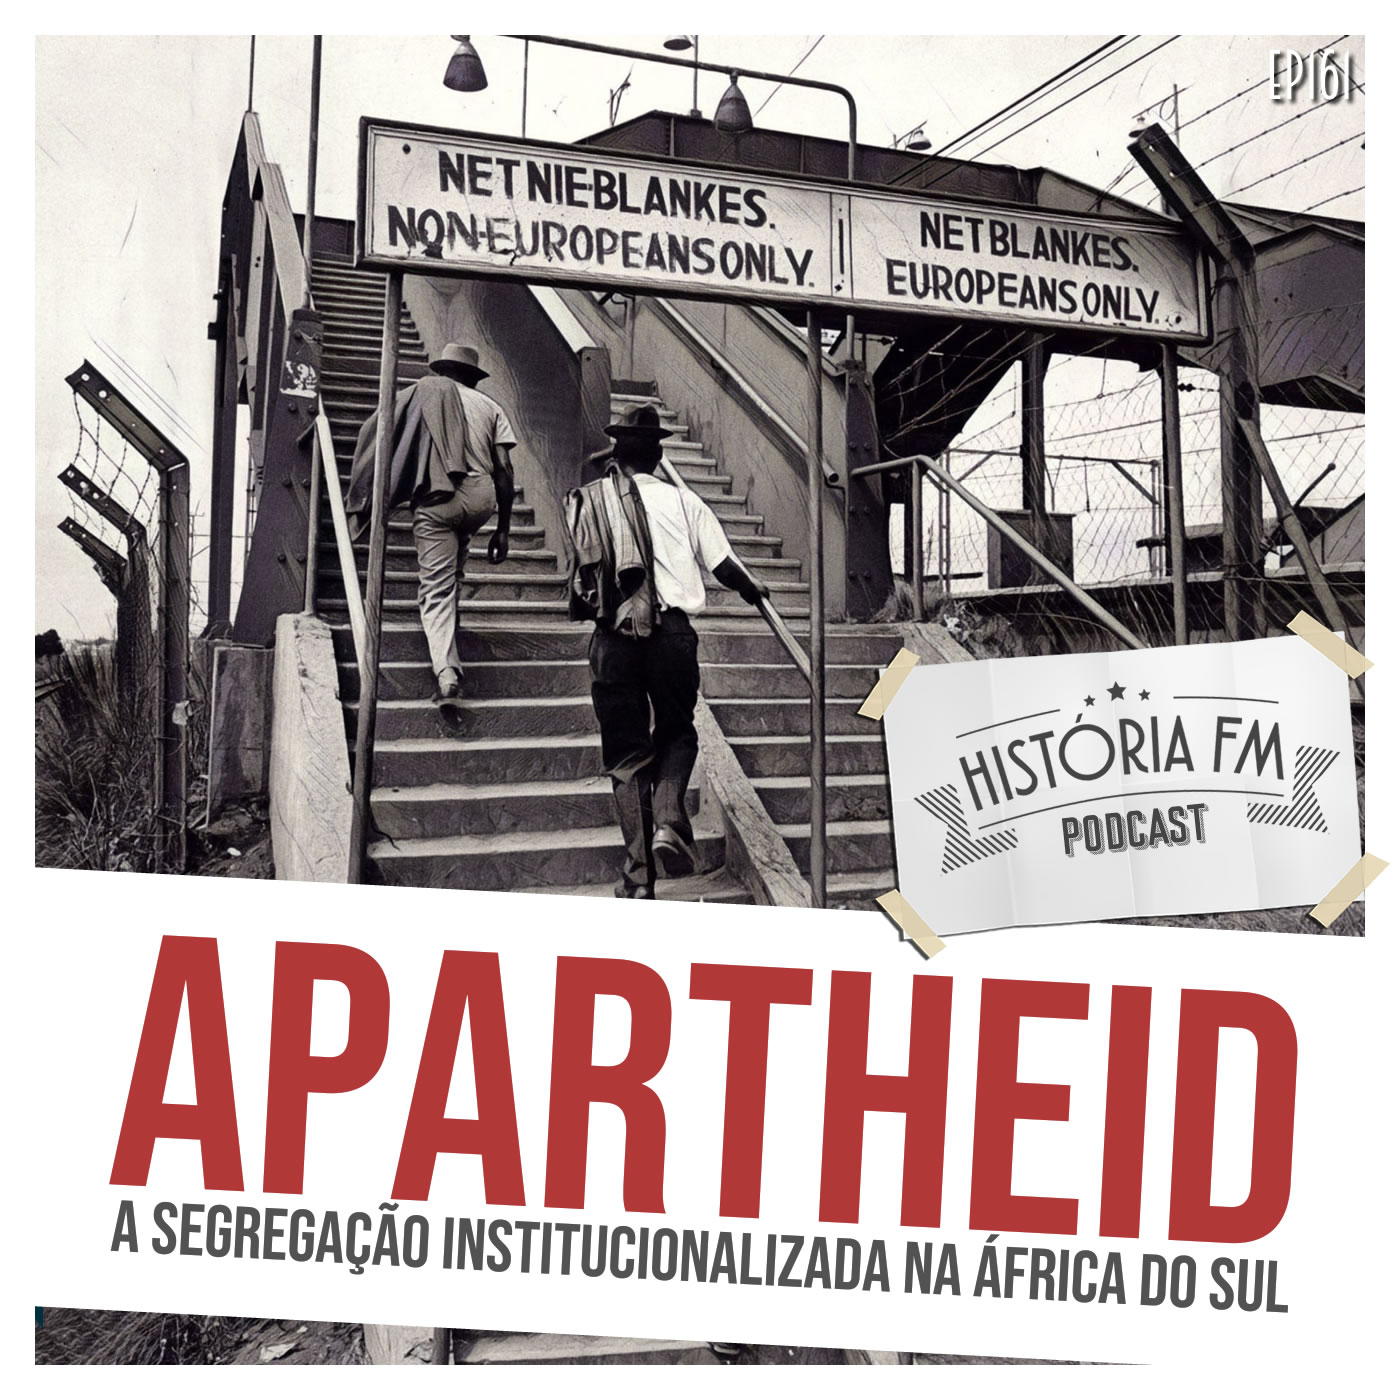 Apartheid: a segregação institucionalizada na África do Sul